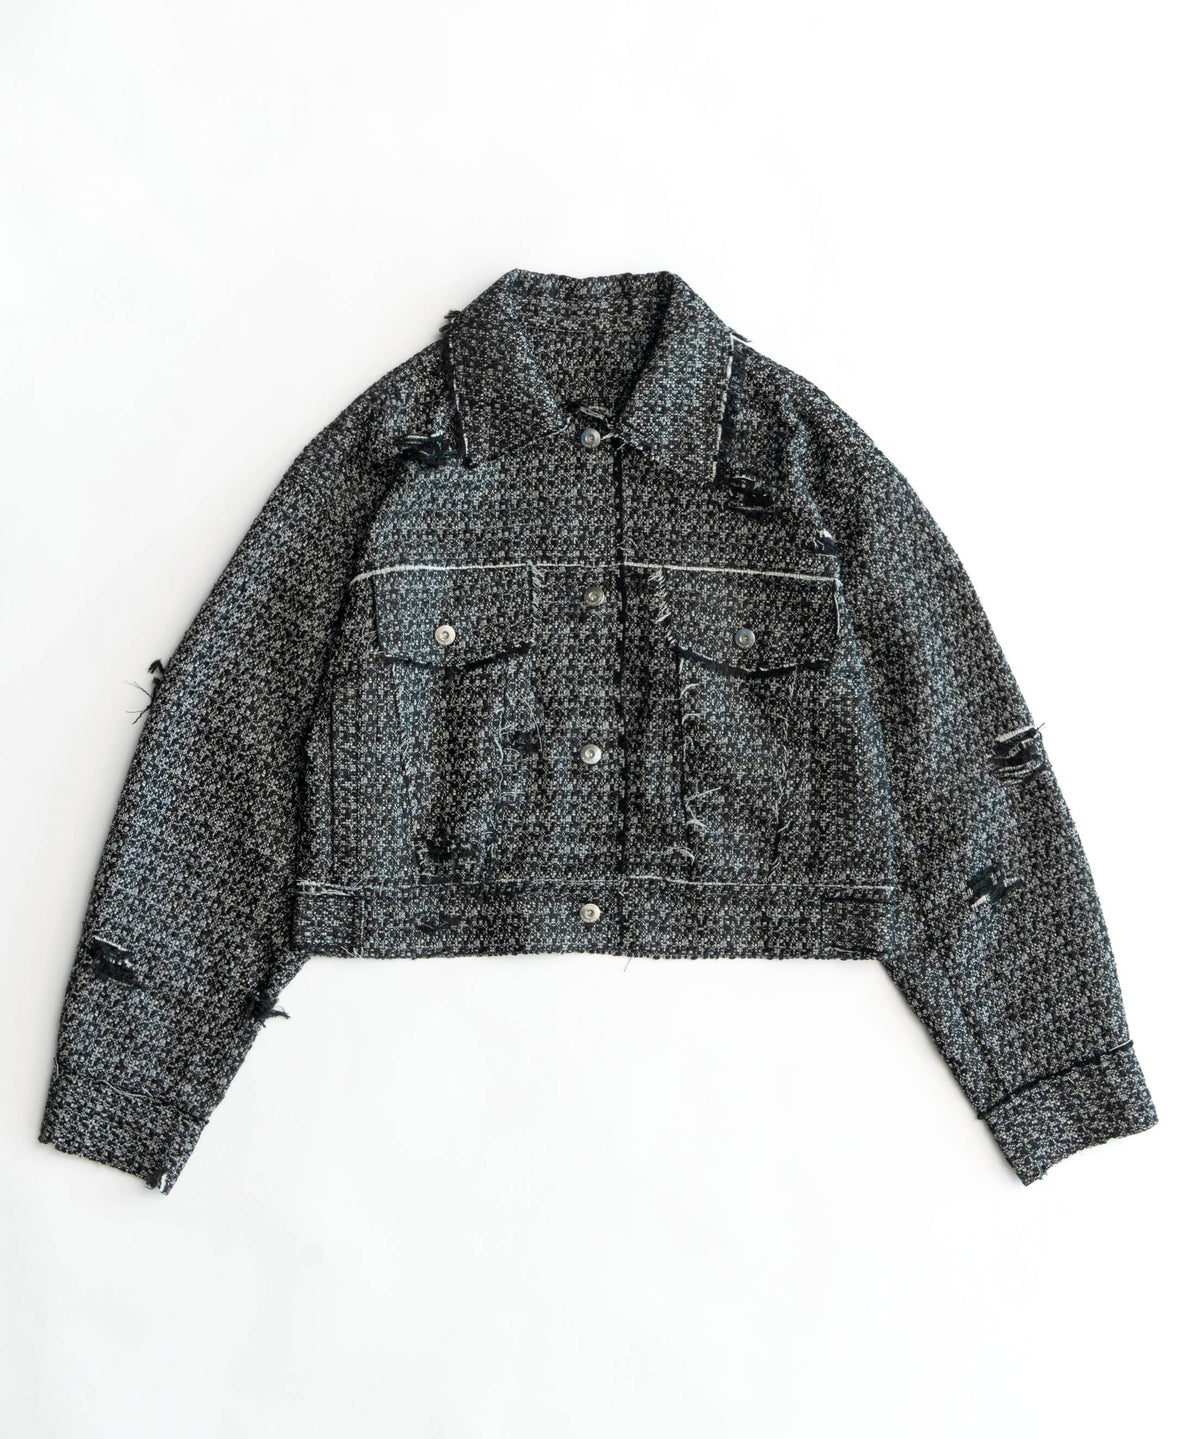 【24SPRING PRE-ORDER】Tweed Distressed Jacket